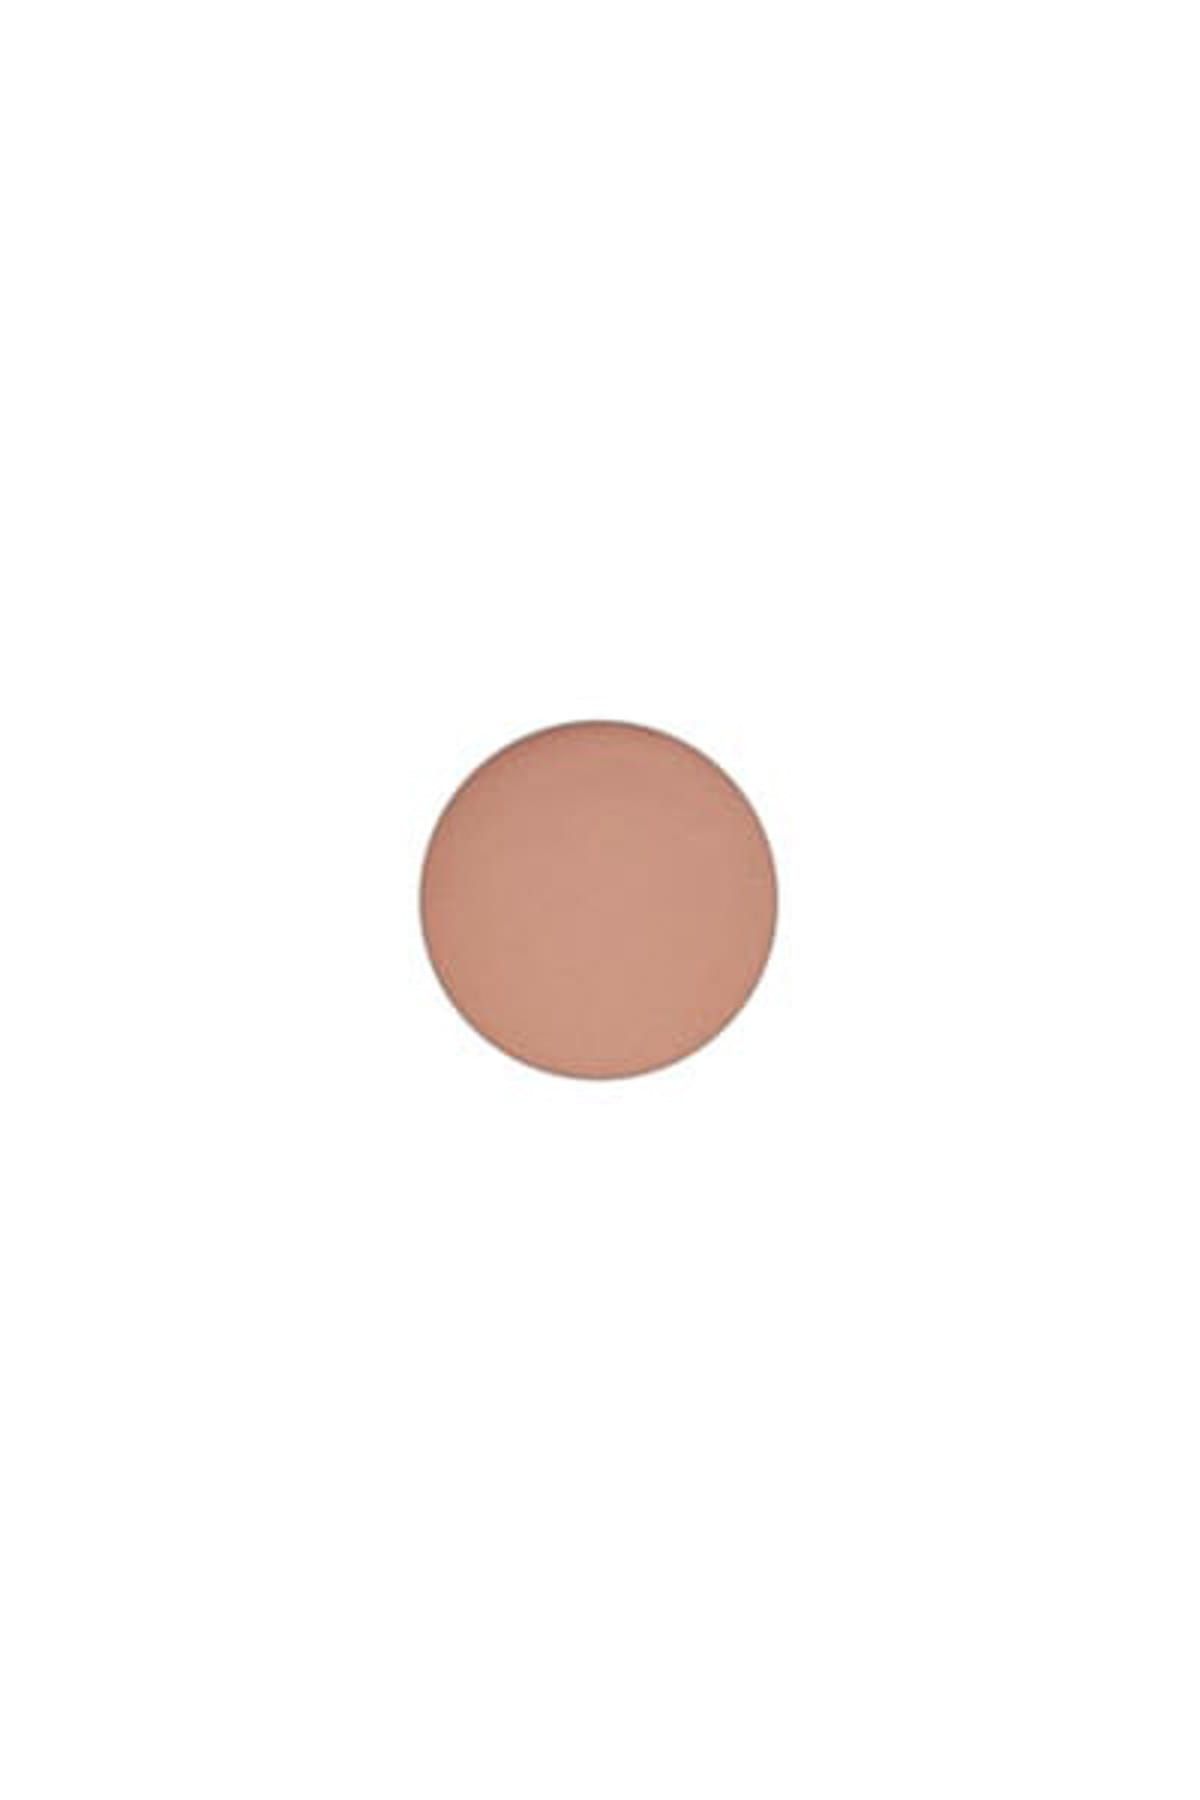 Mac Göz Farı - Refill Far Soft Brown 1.5 g 773602036035